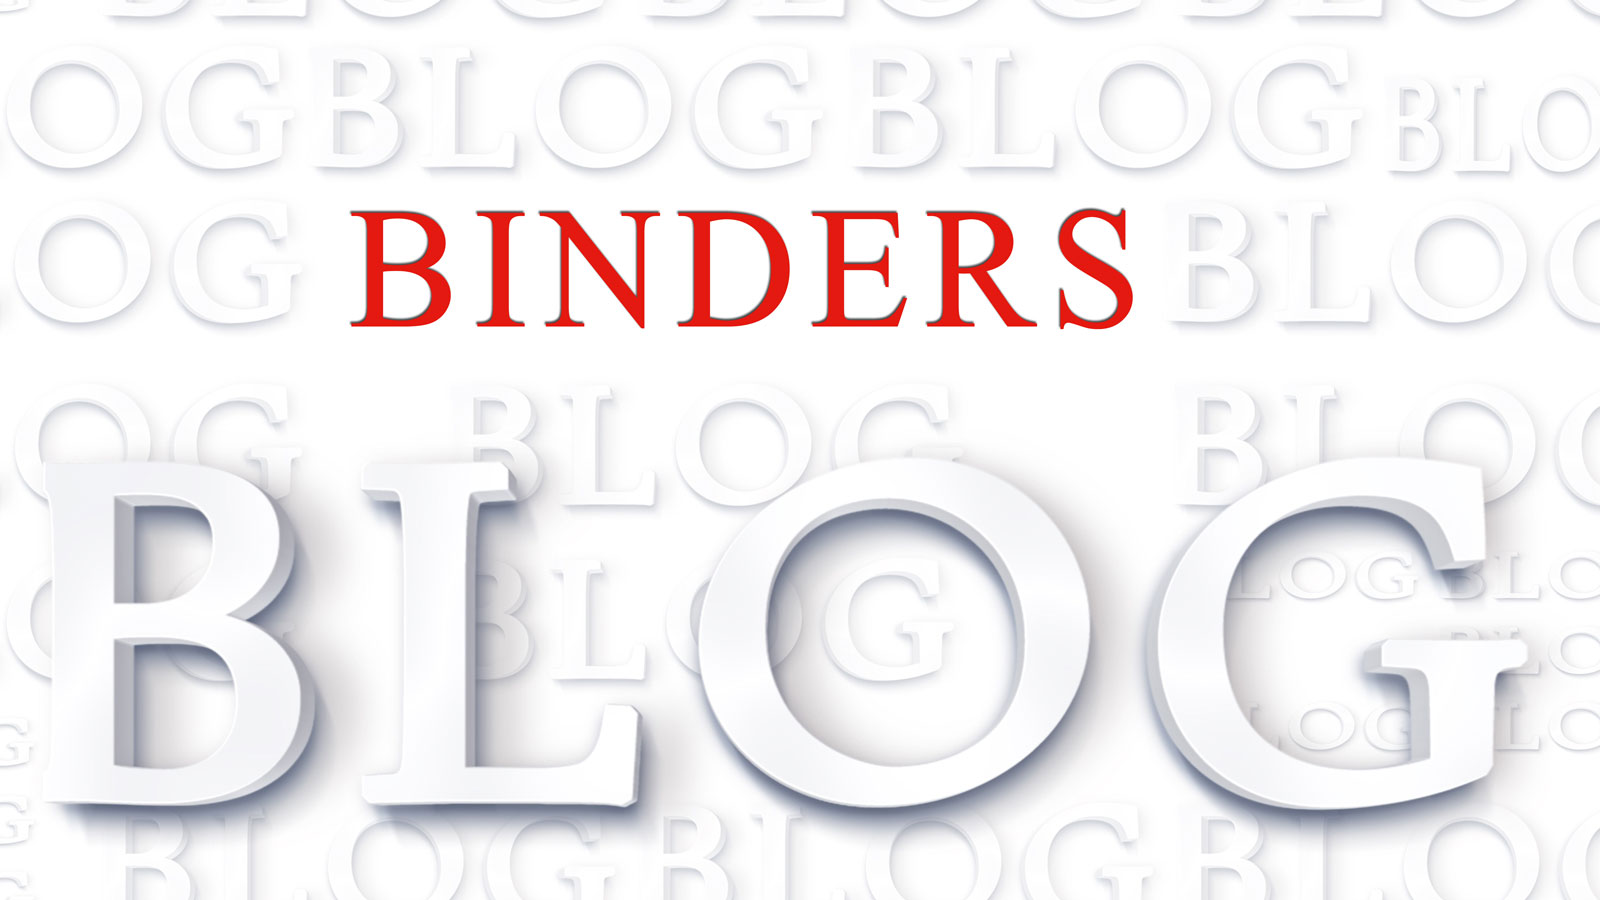 Binders Blog: meine Meinung und Neuigkeiten